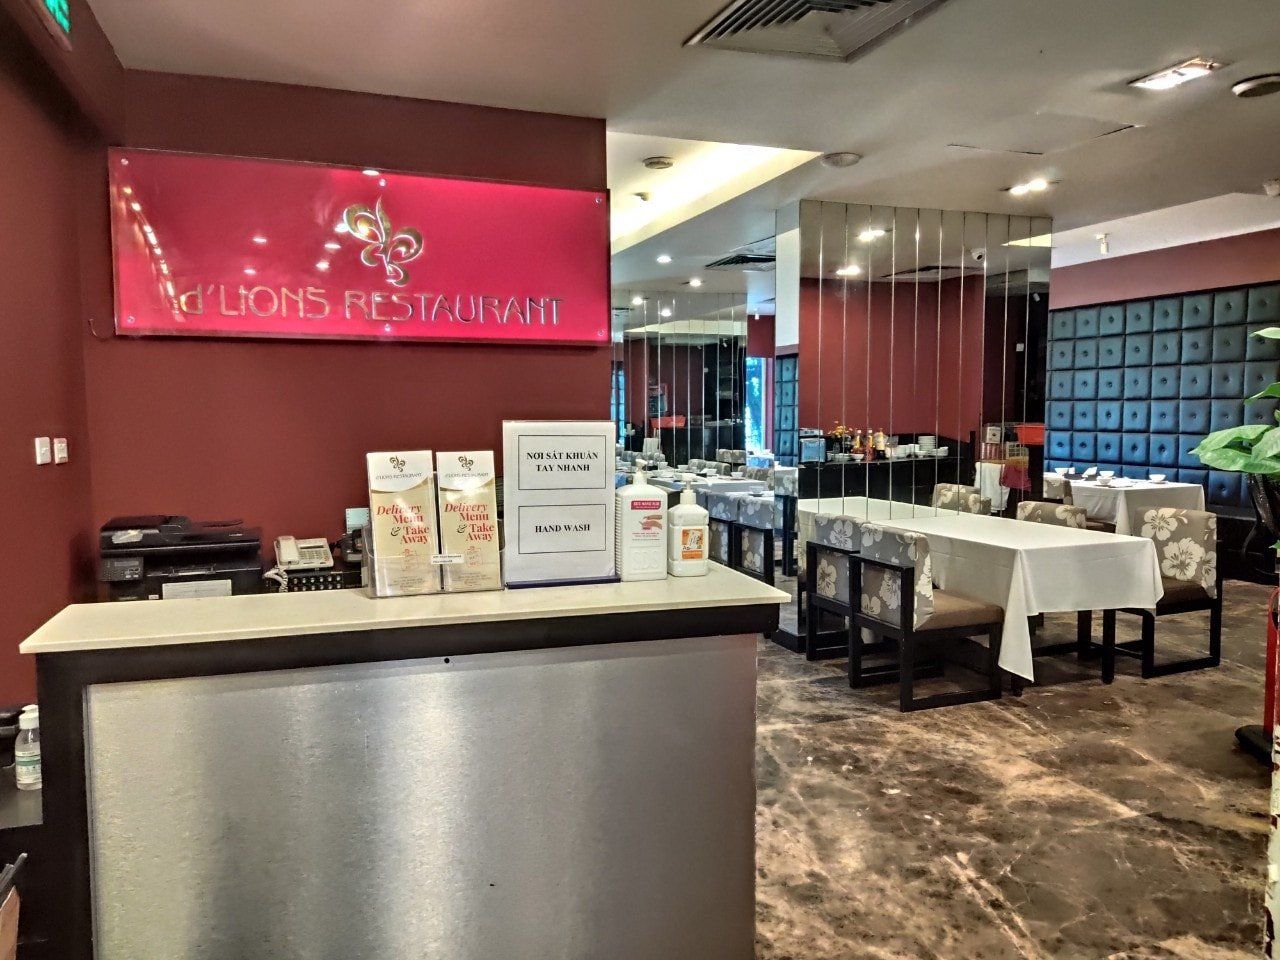 D’Lions Restaurant - Lê Duẩn